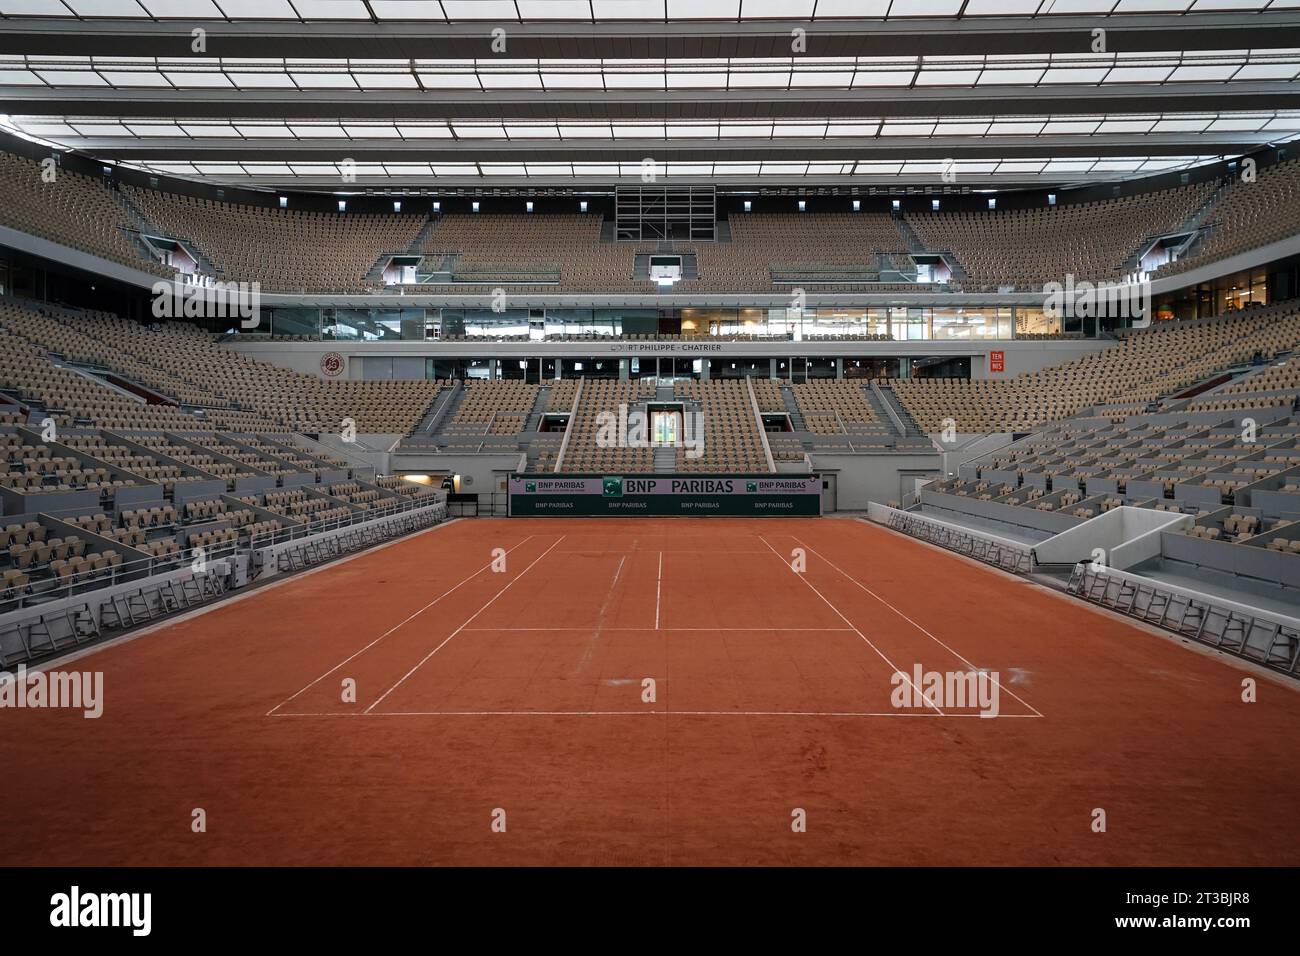 Stadium Roland Garros, Paris – Geoplast